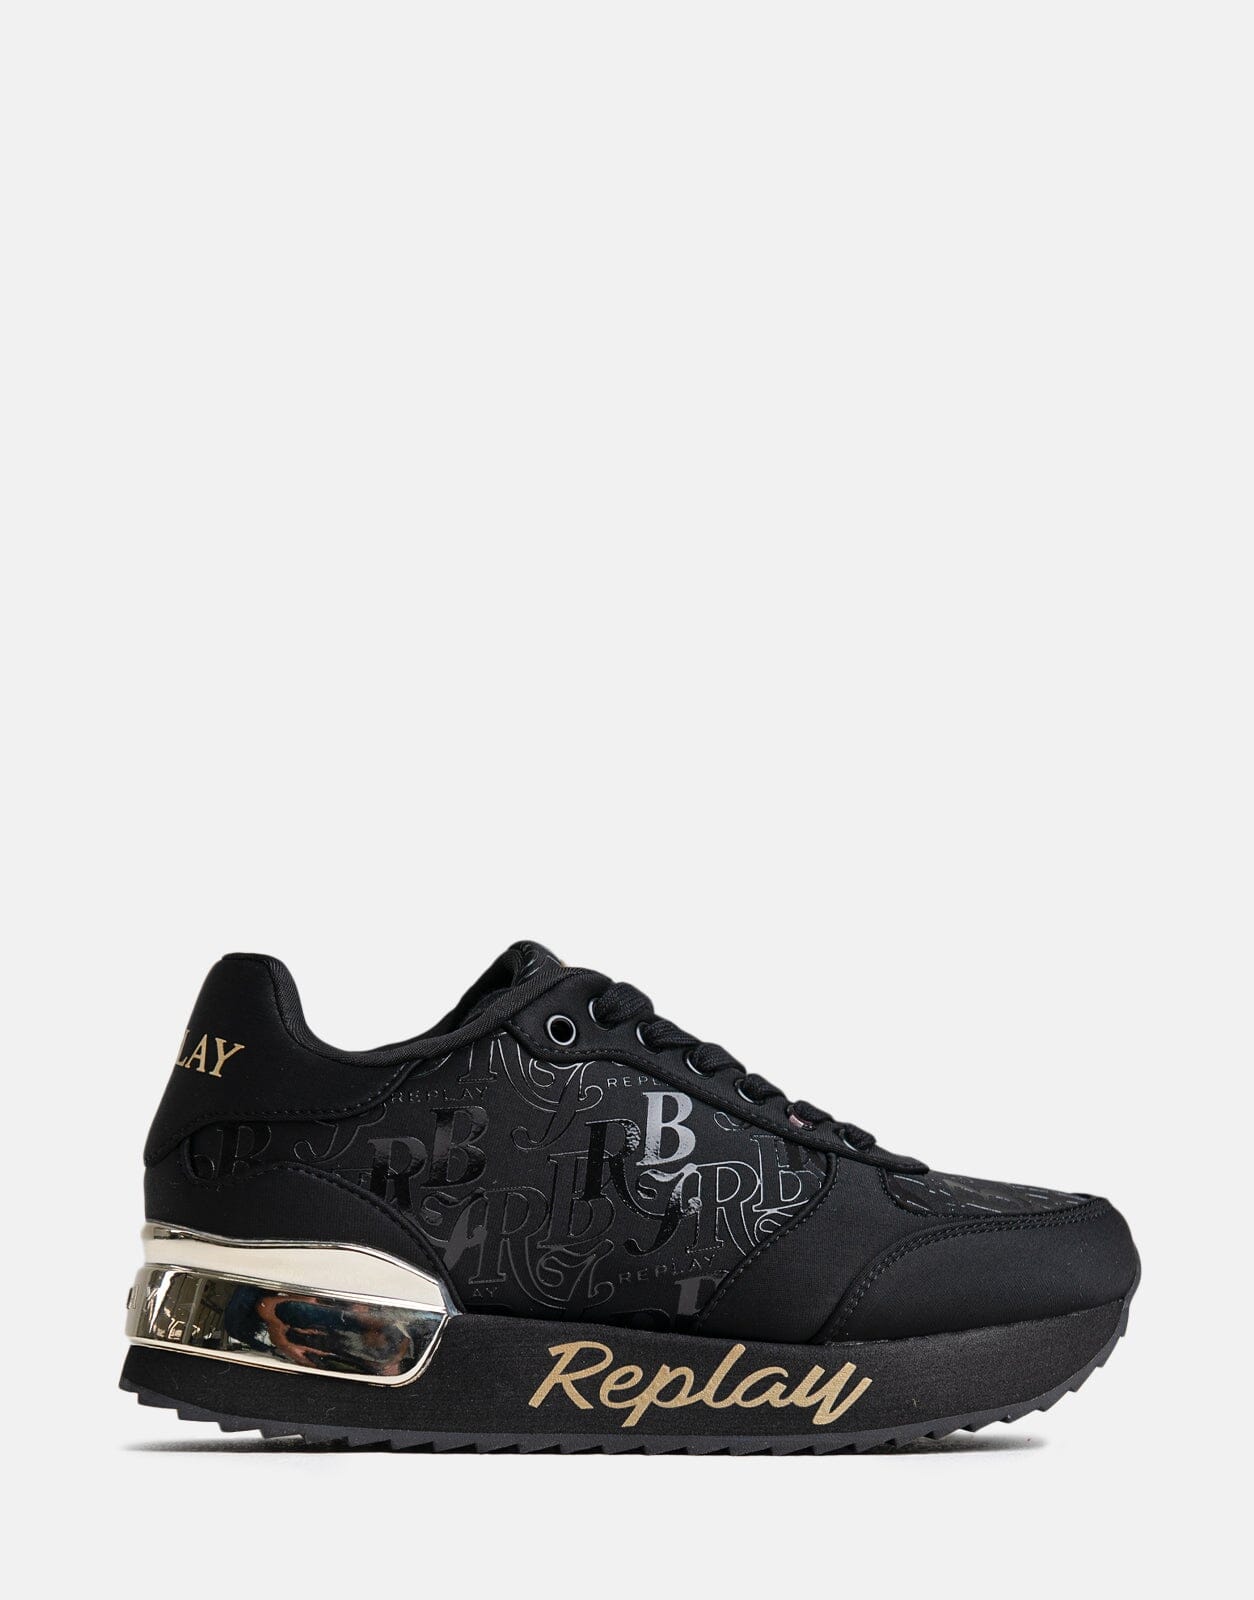 Replay Penny RBJ Black Sneakers - Subwear